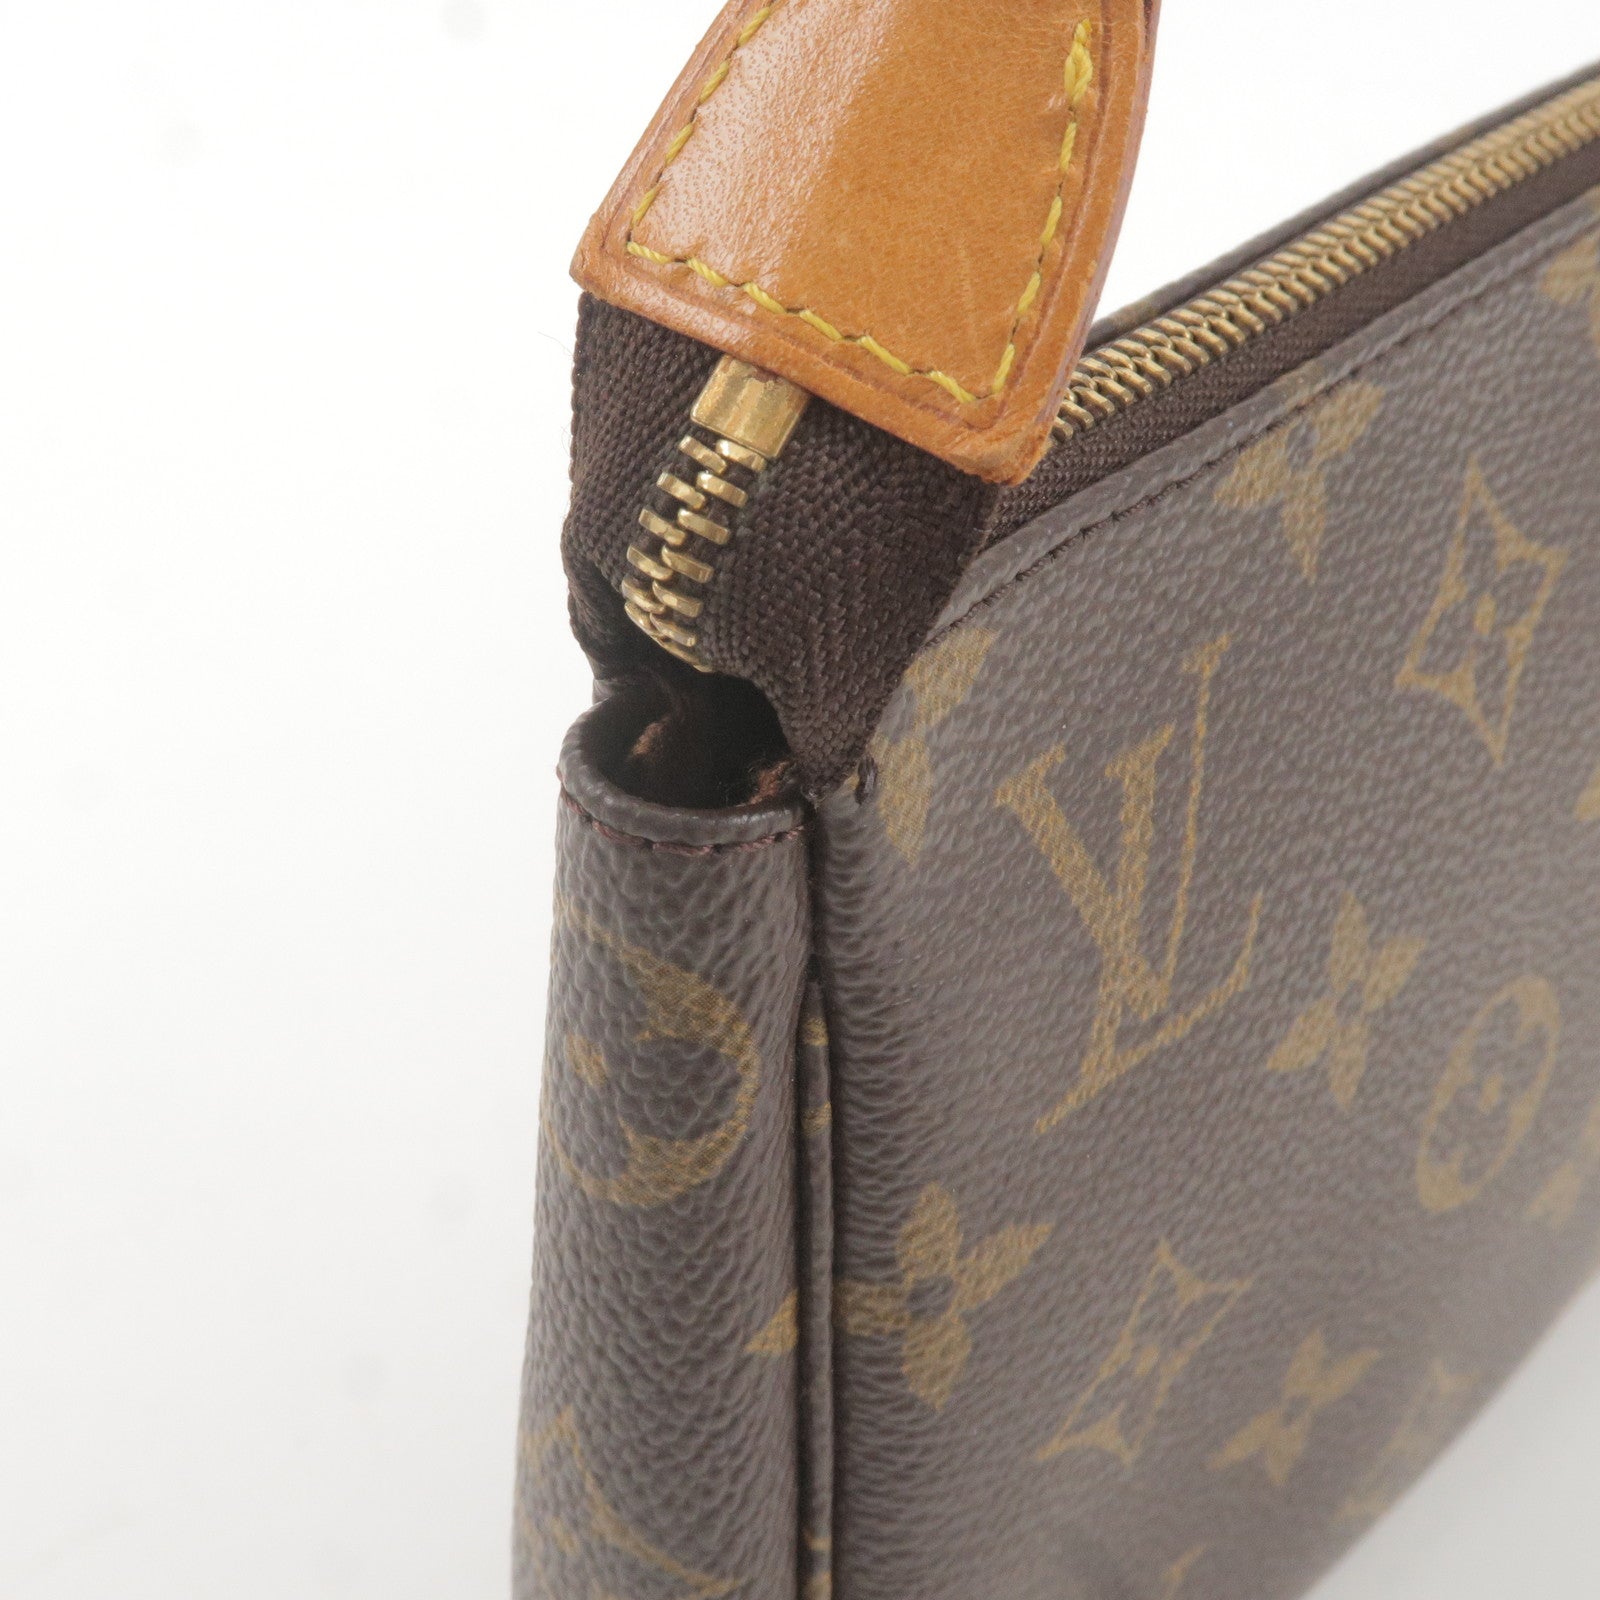 Louis Vuitton x Stephen Sprouse pre-owned Pochette Accessoires Bag